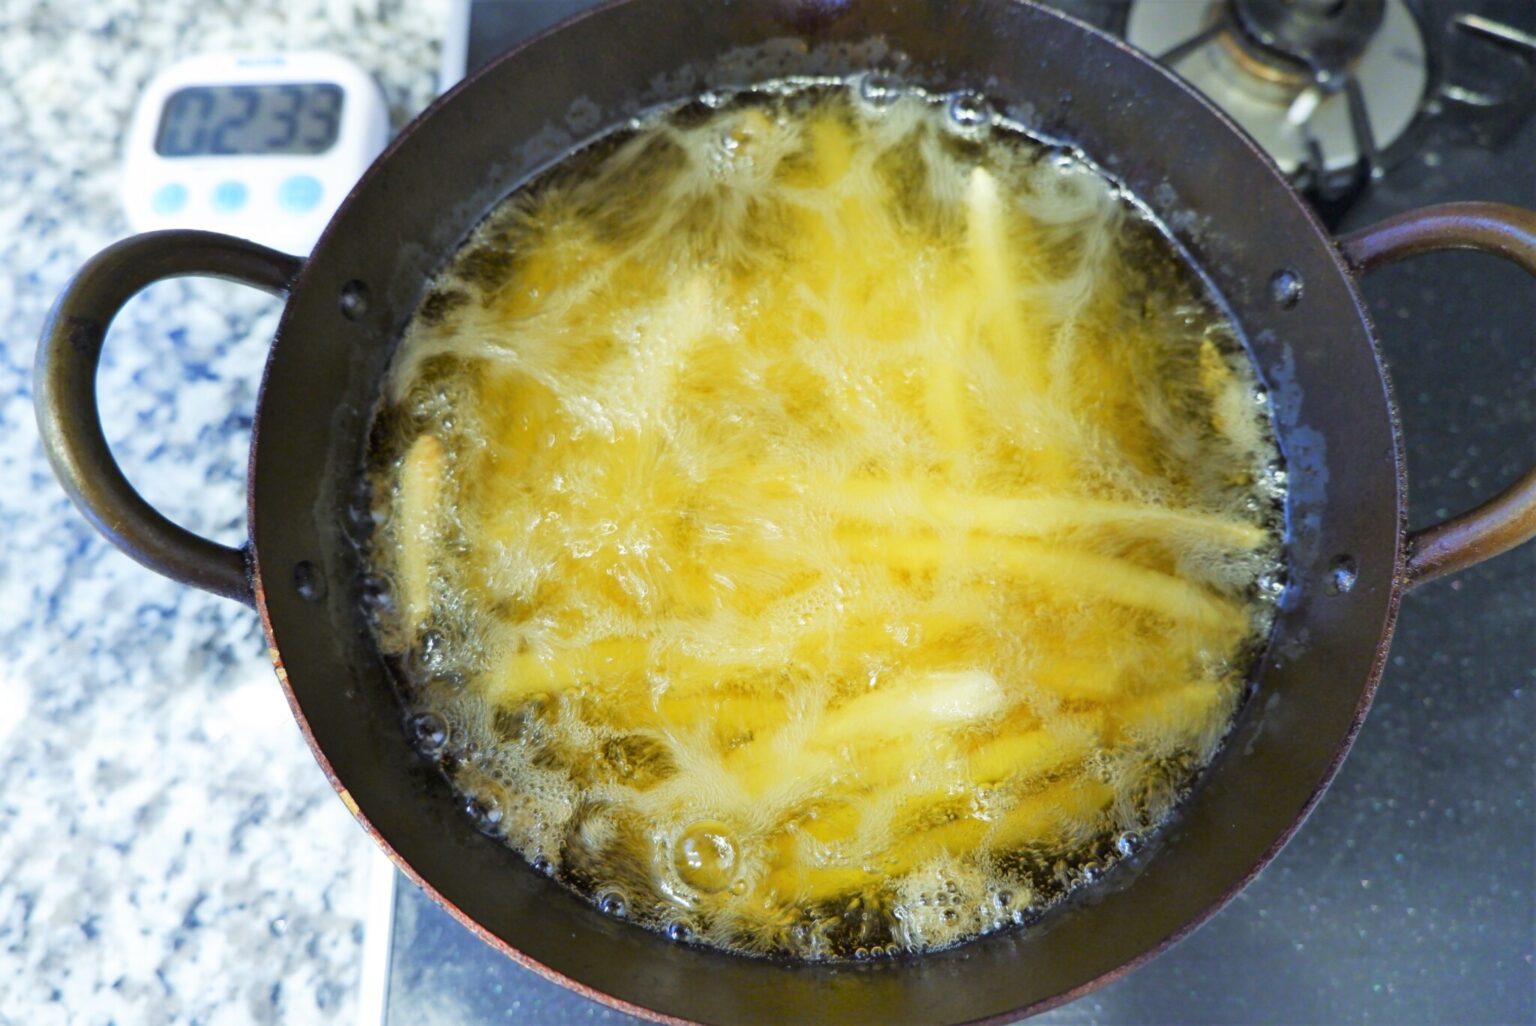 フライドポテトは冷凍のまま180度の脂で3〜5分揚げます。